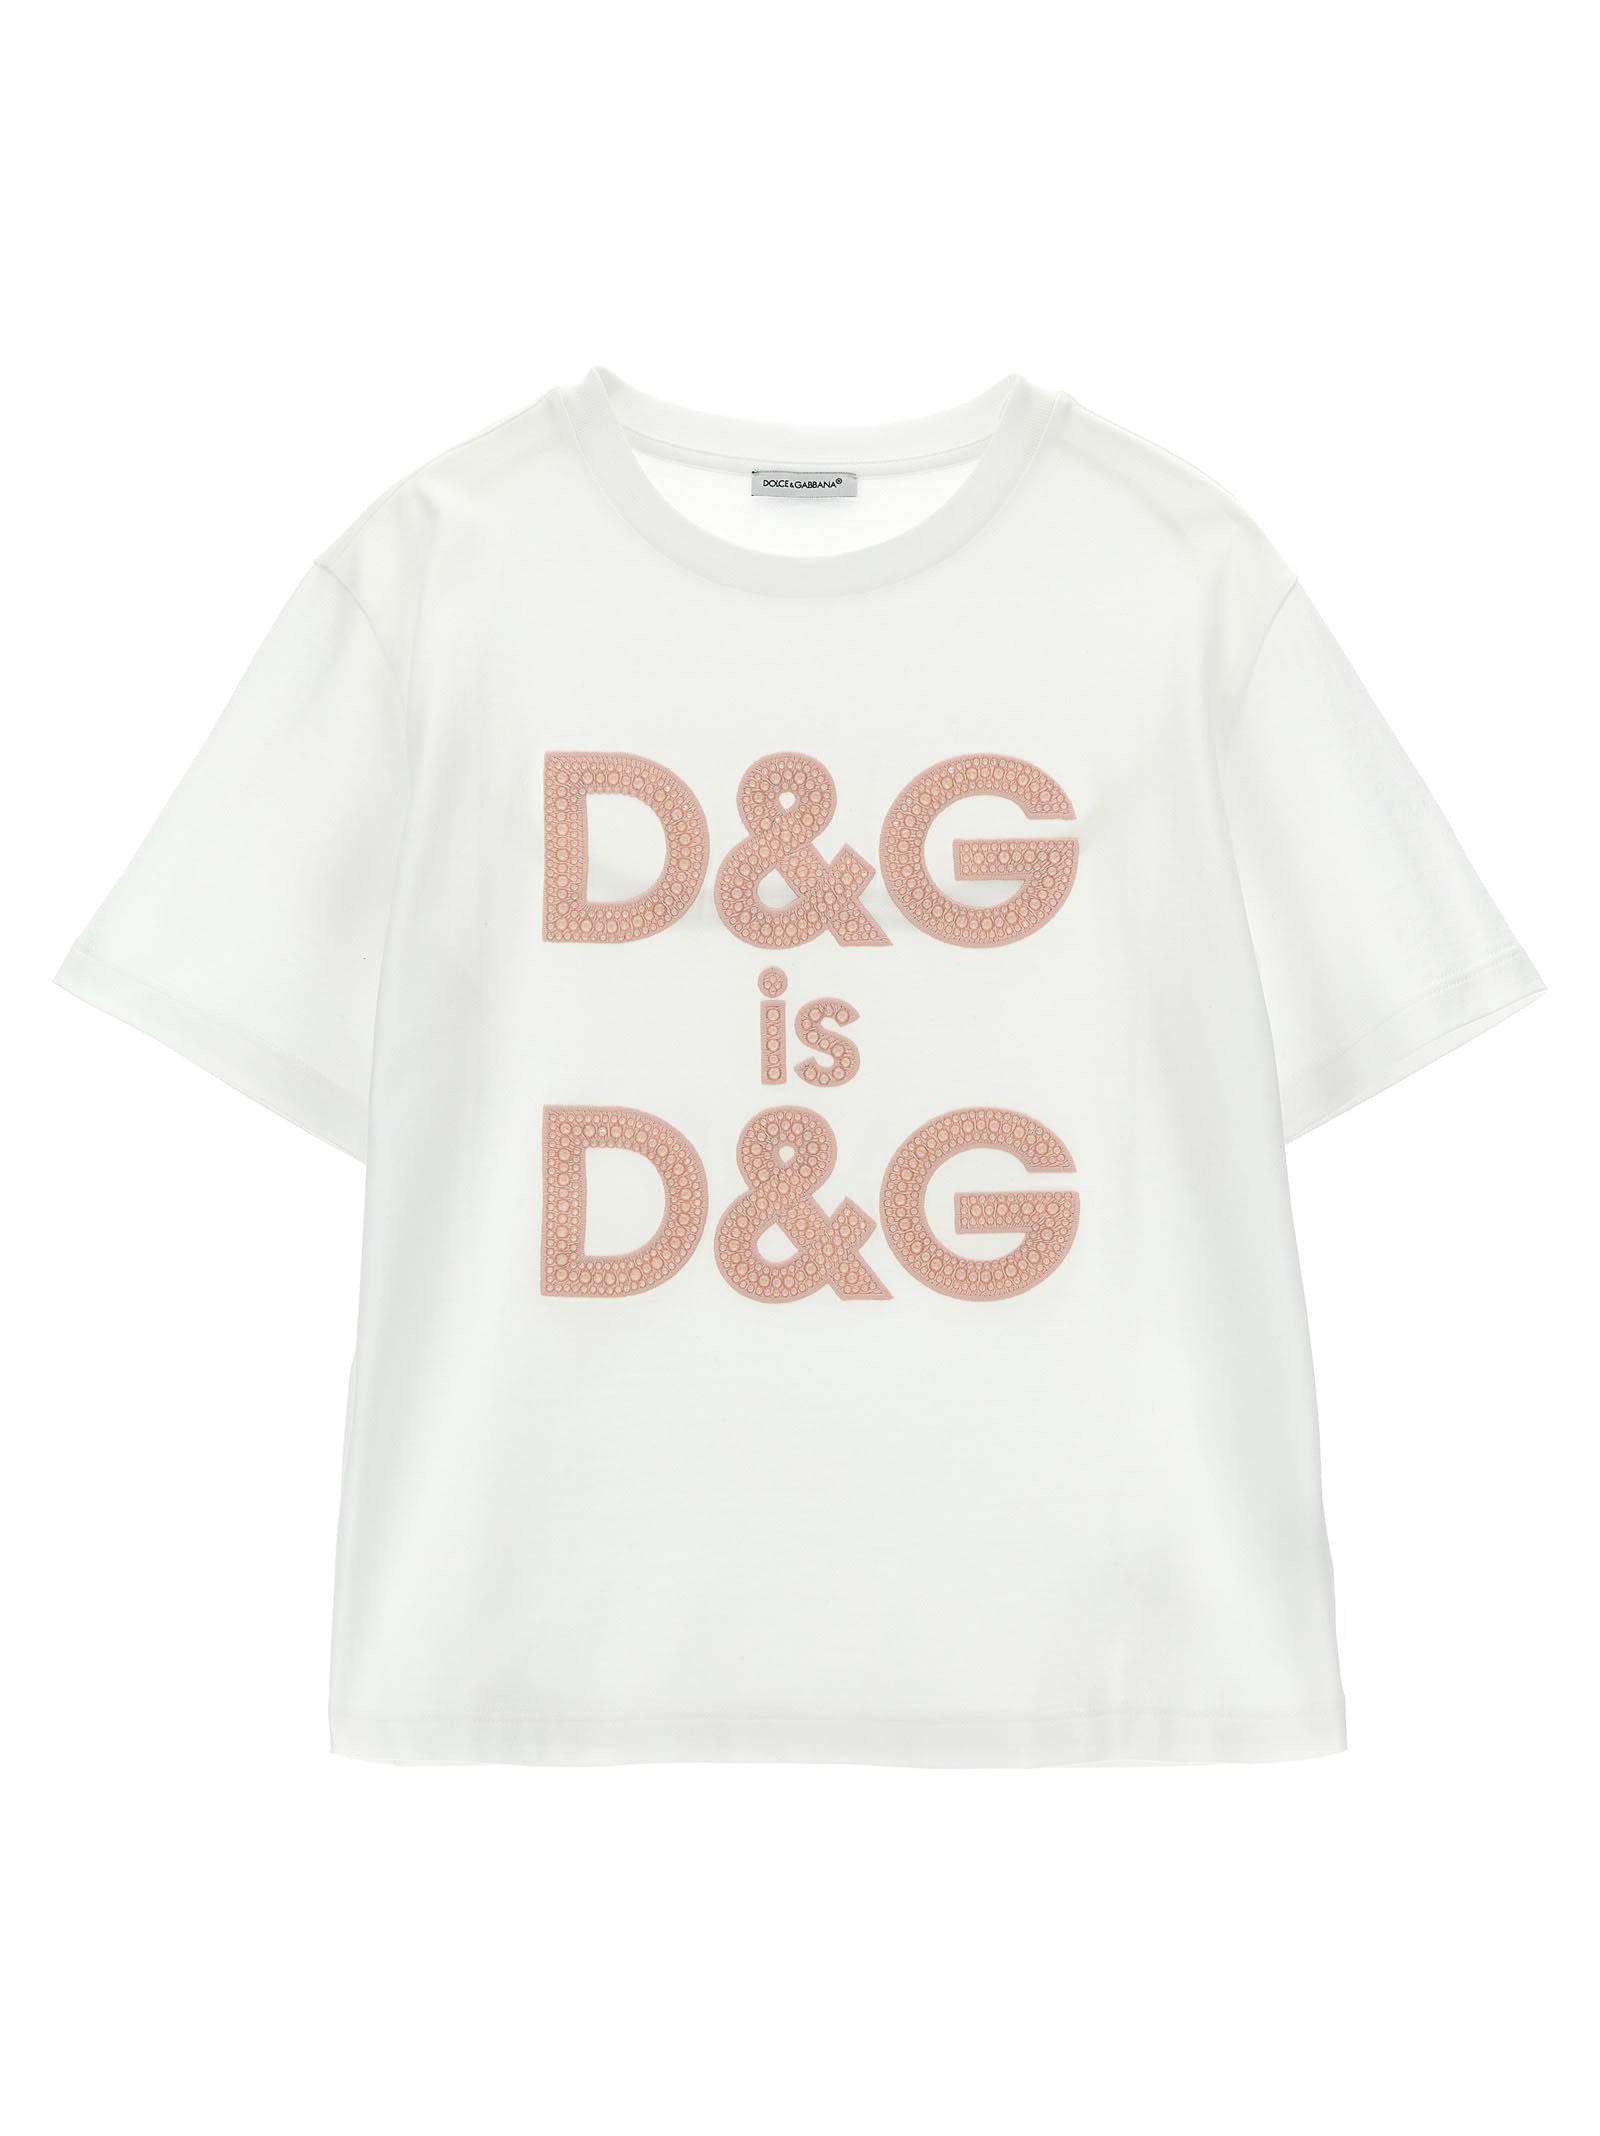 Dolce & Gabbana Kids' Logo T-shirt In White